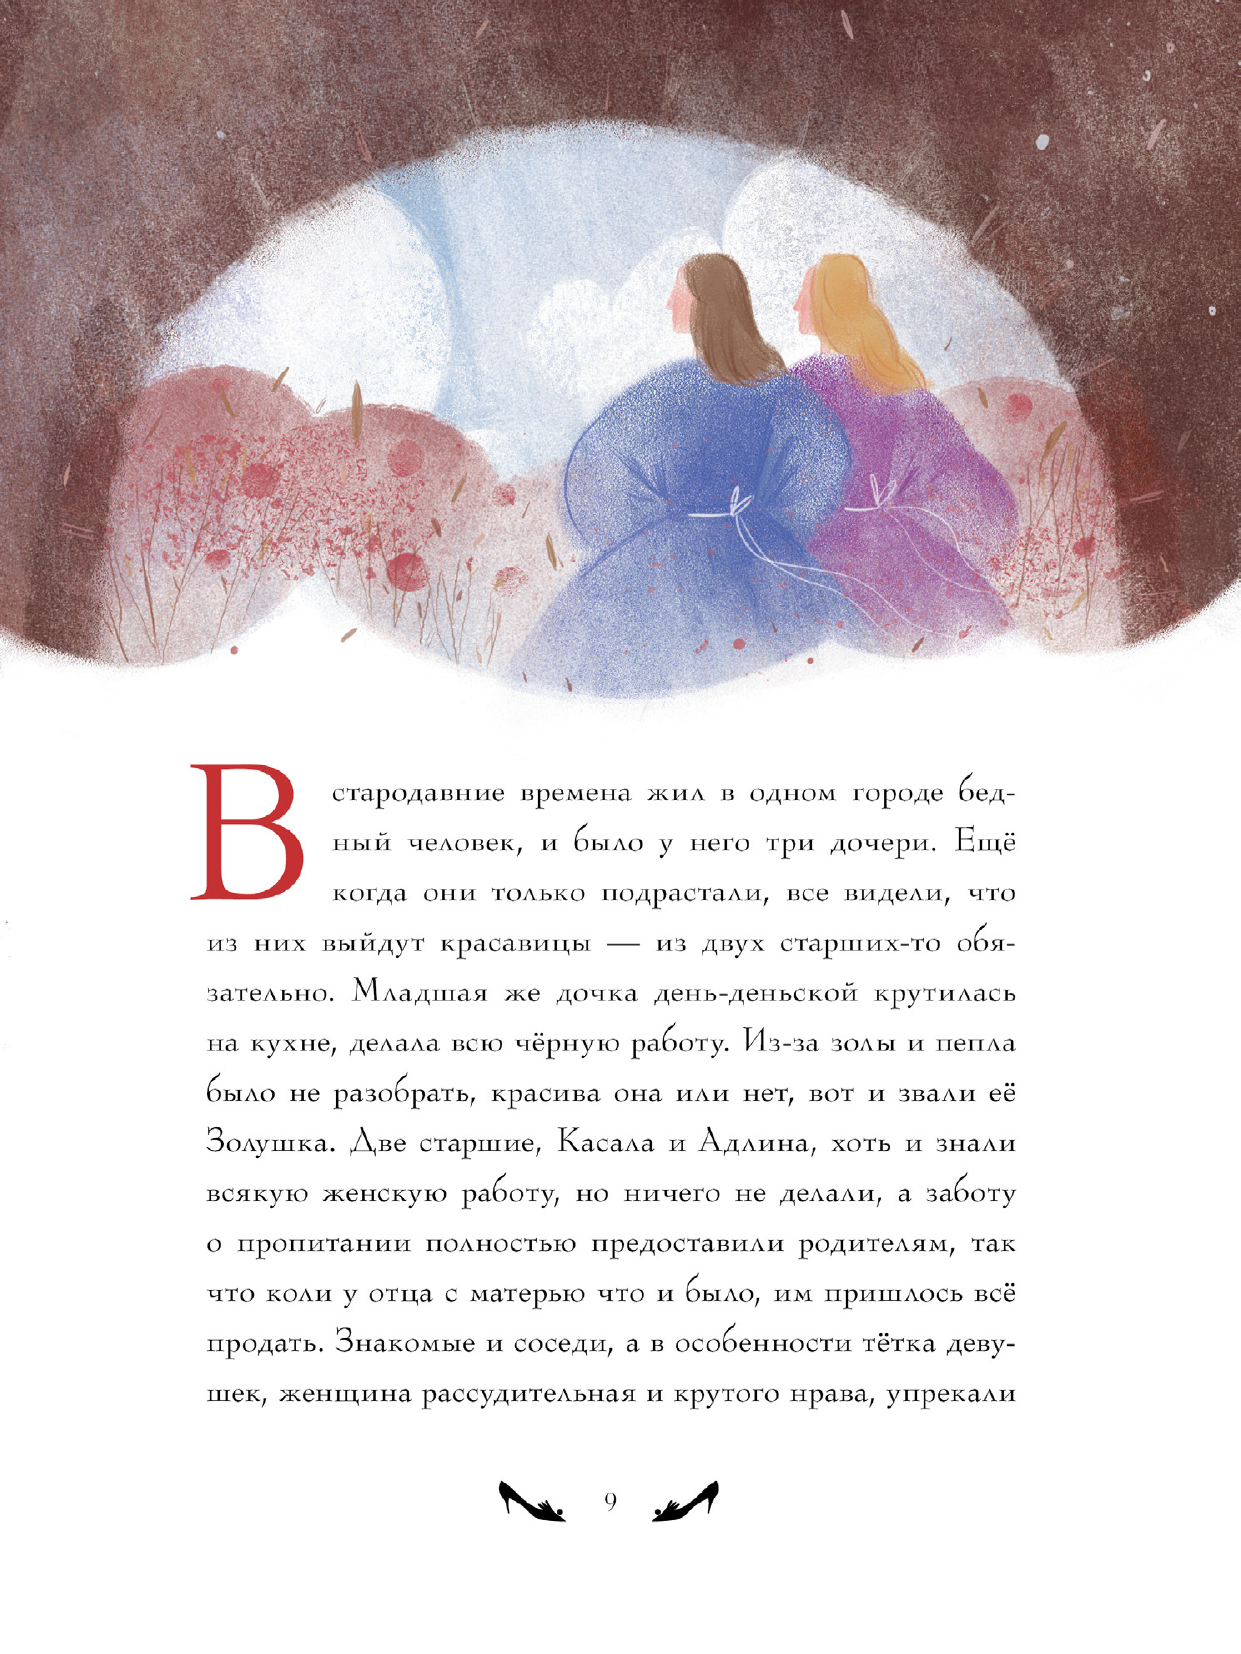 Немцова Божена Жемчужные сказки - страница 3